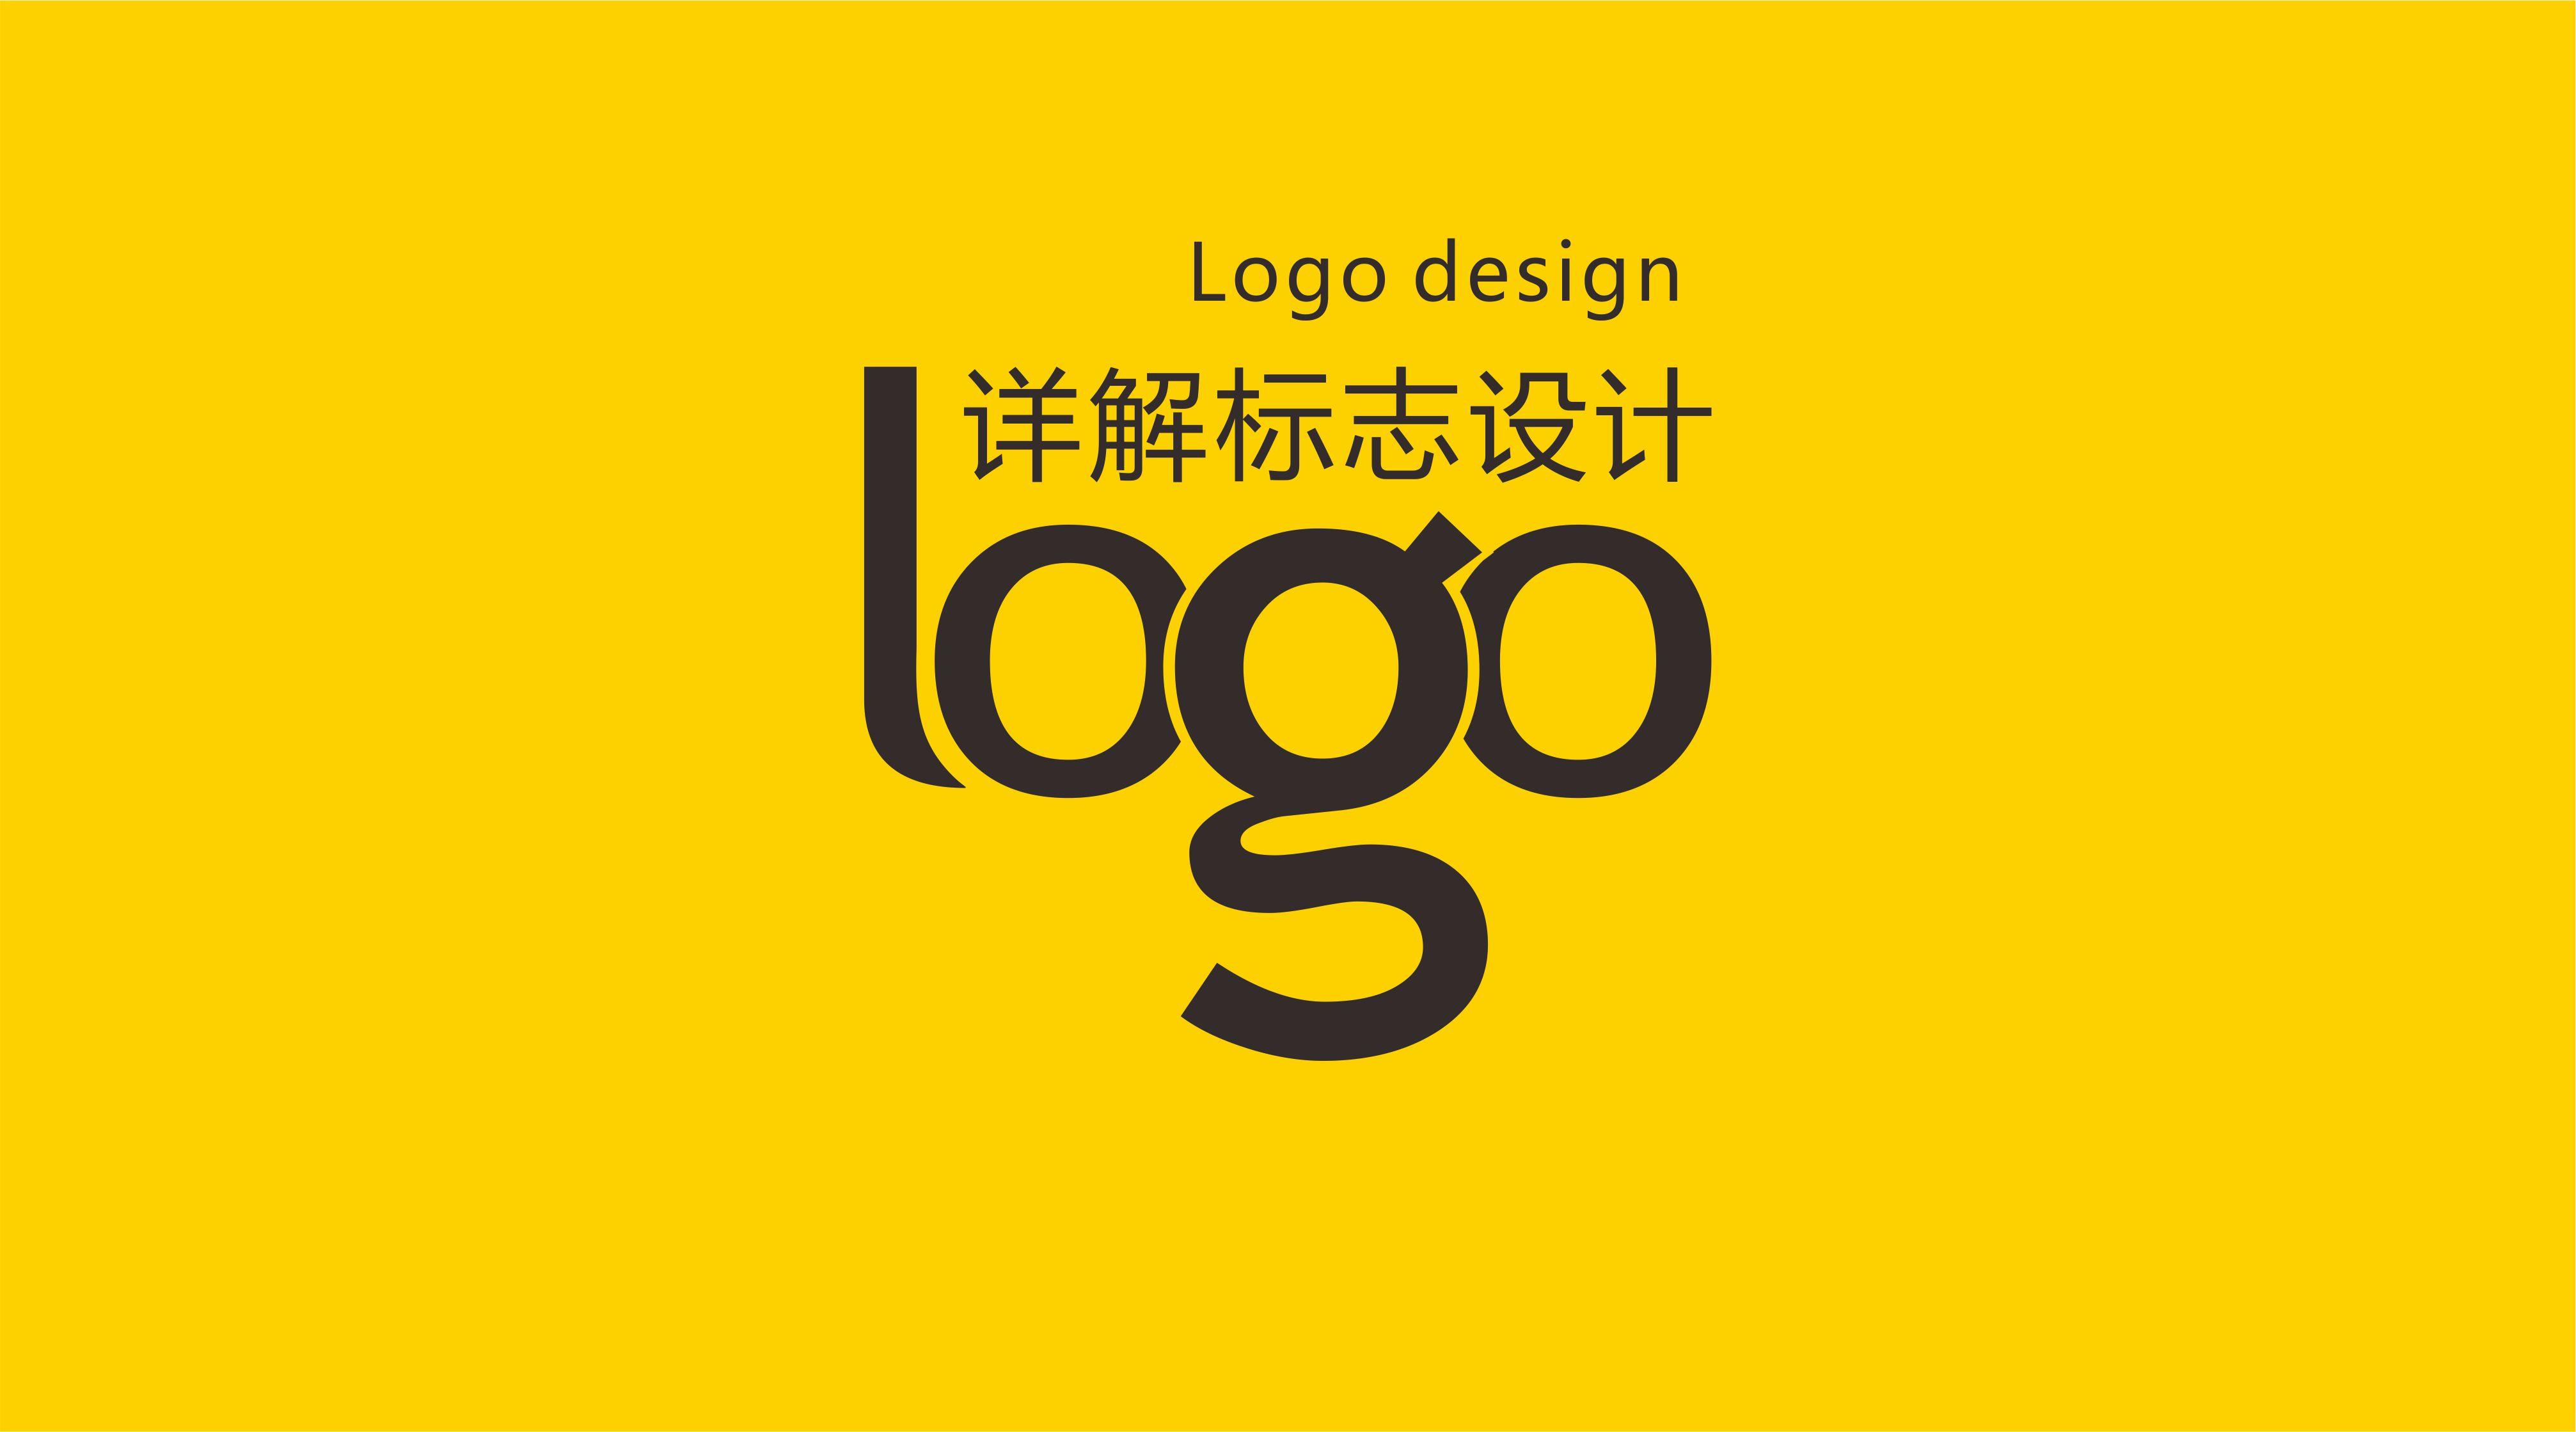 详解LOGO设计全过程